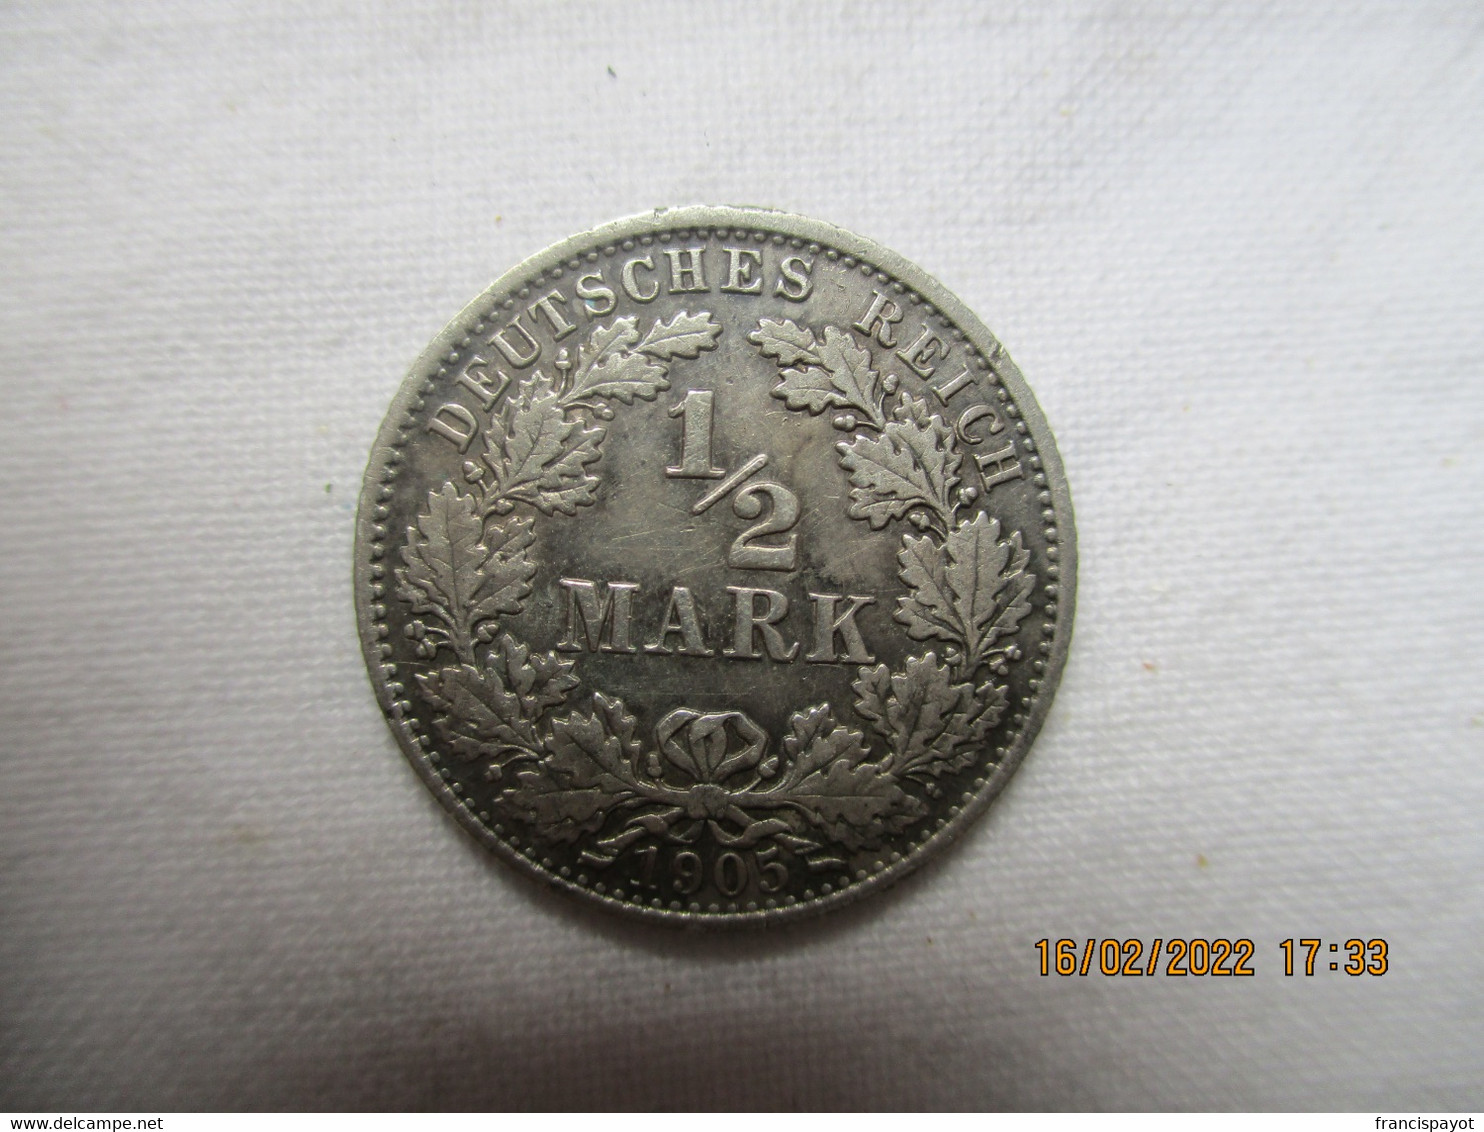 Germany 1/2 Reich Mark 1905 A - 50 Pfennig